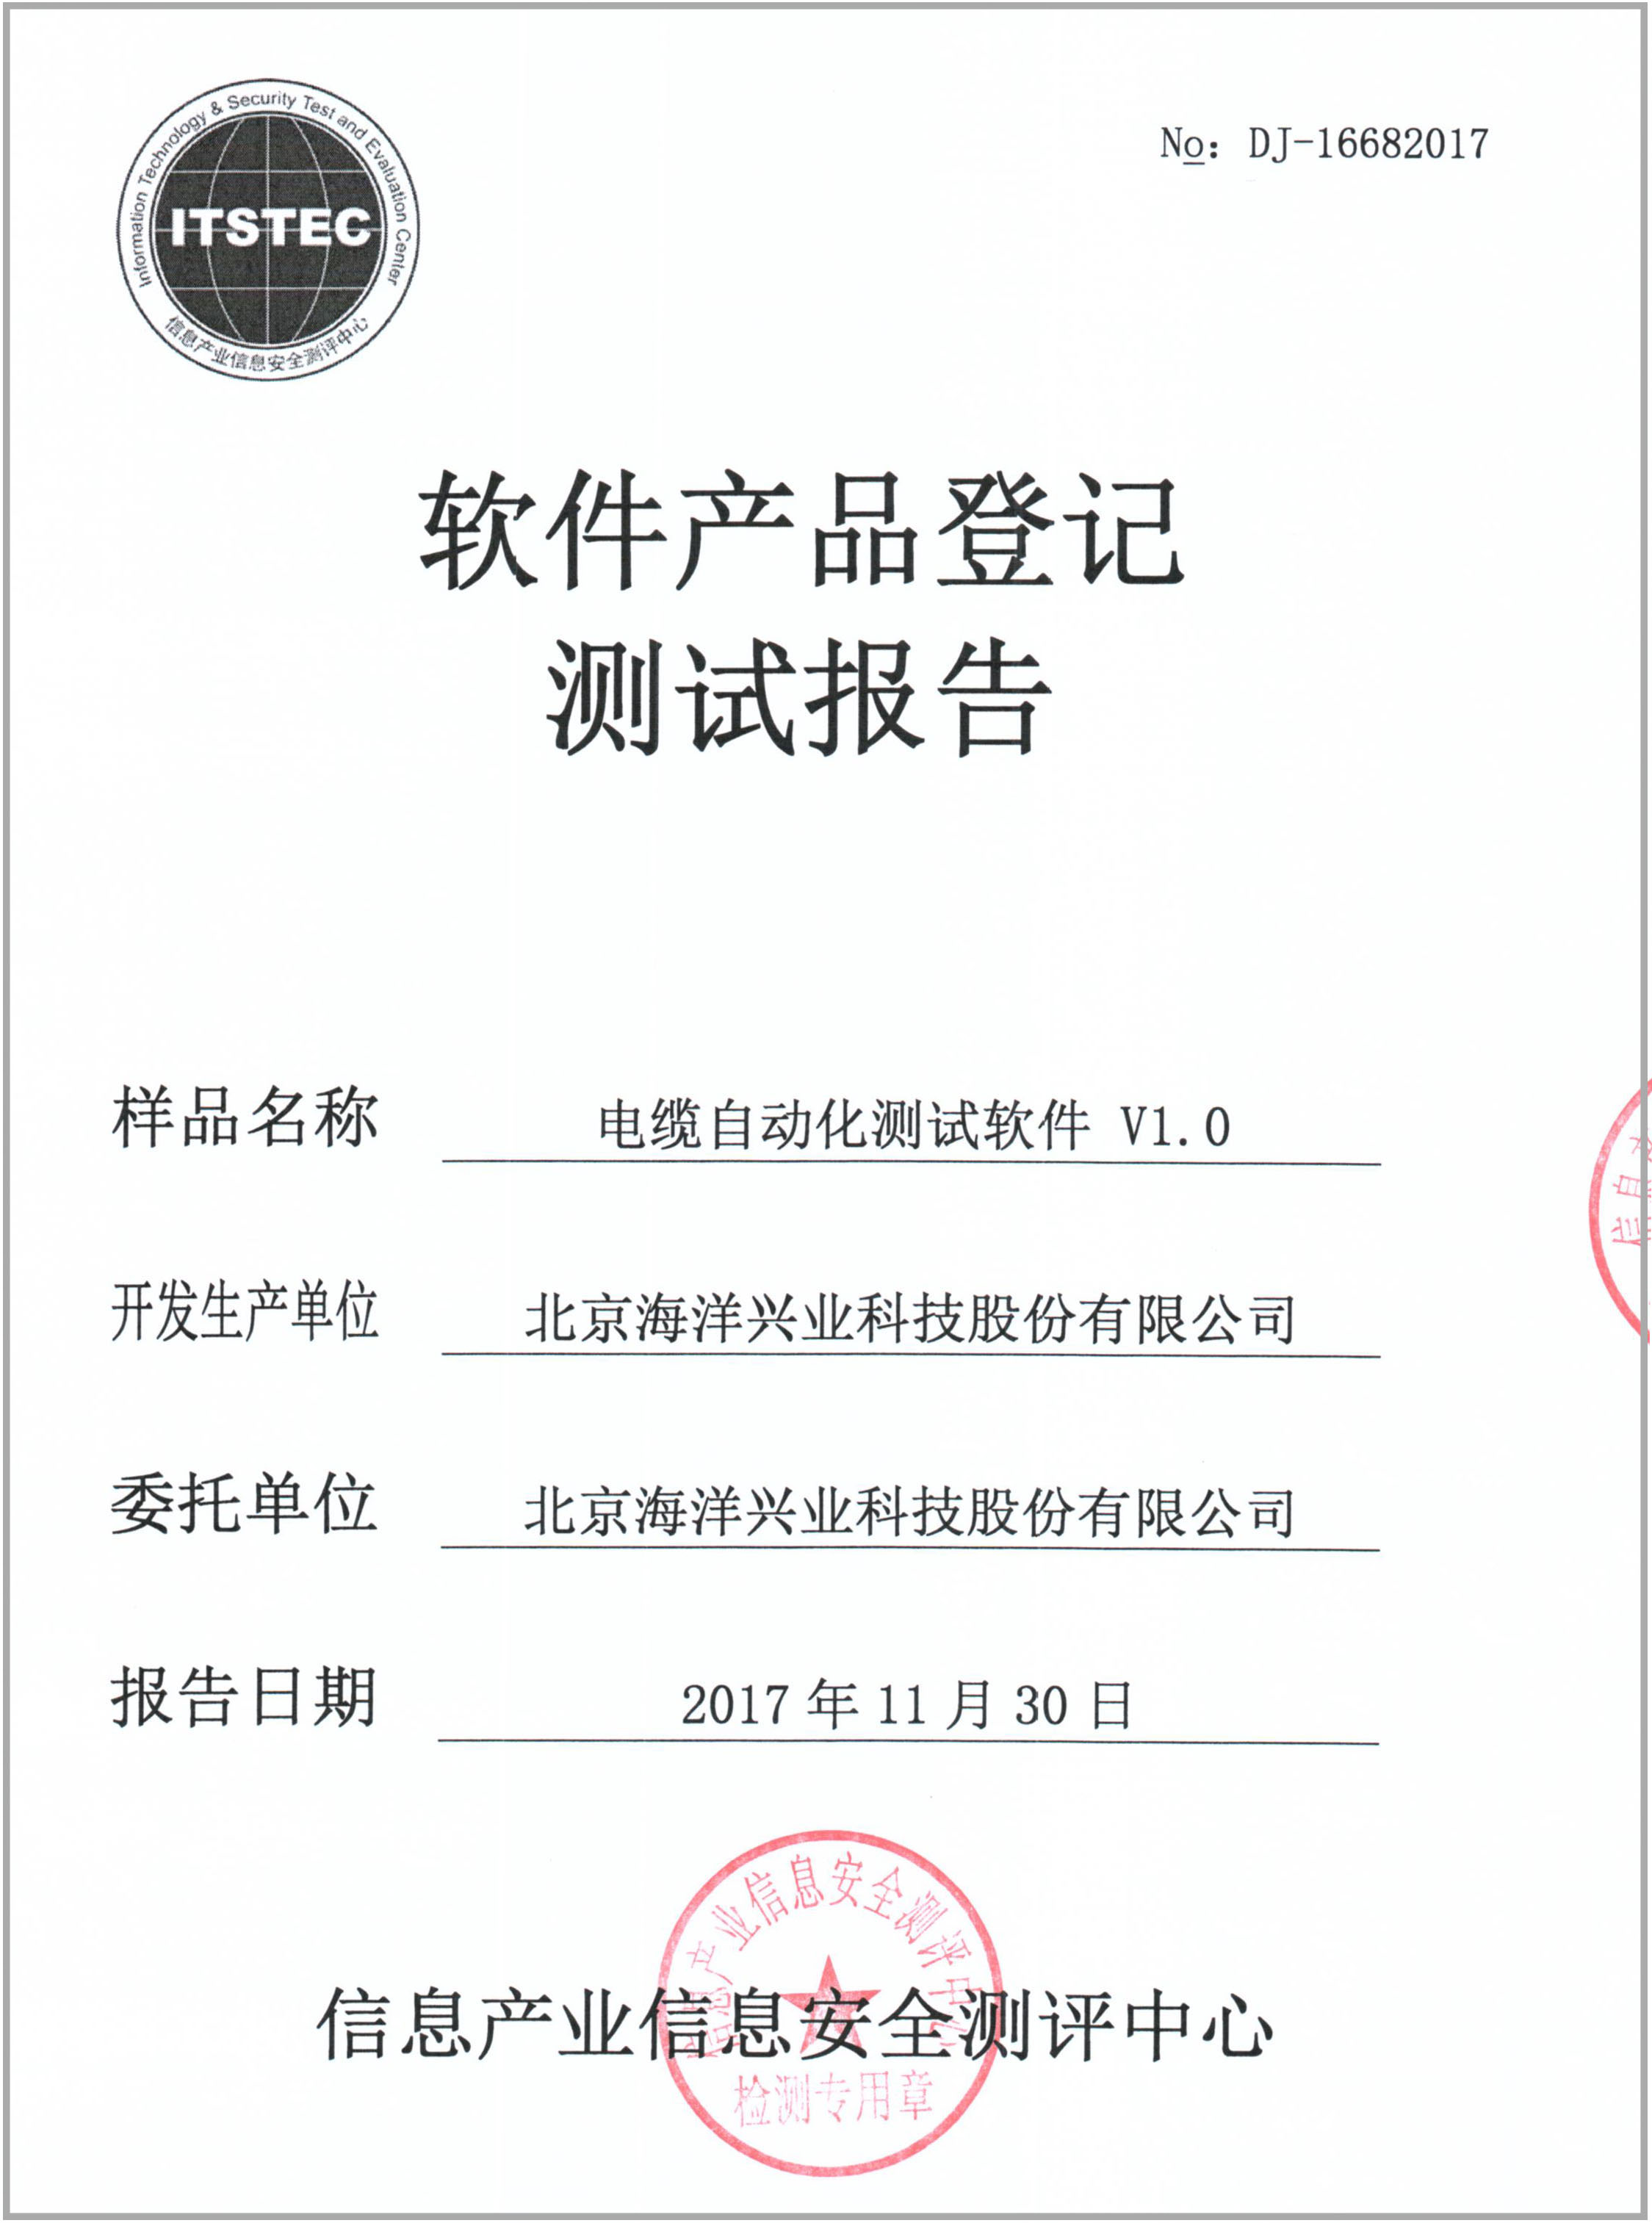 喜讯:北京海洋兴业科技股份有限公司的电缆自动化测试软件通过软件产